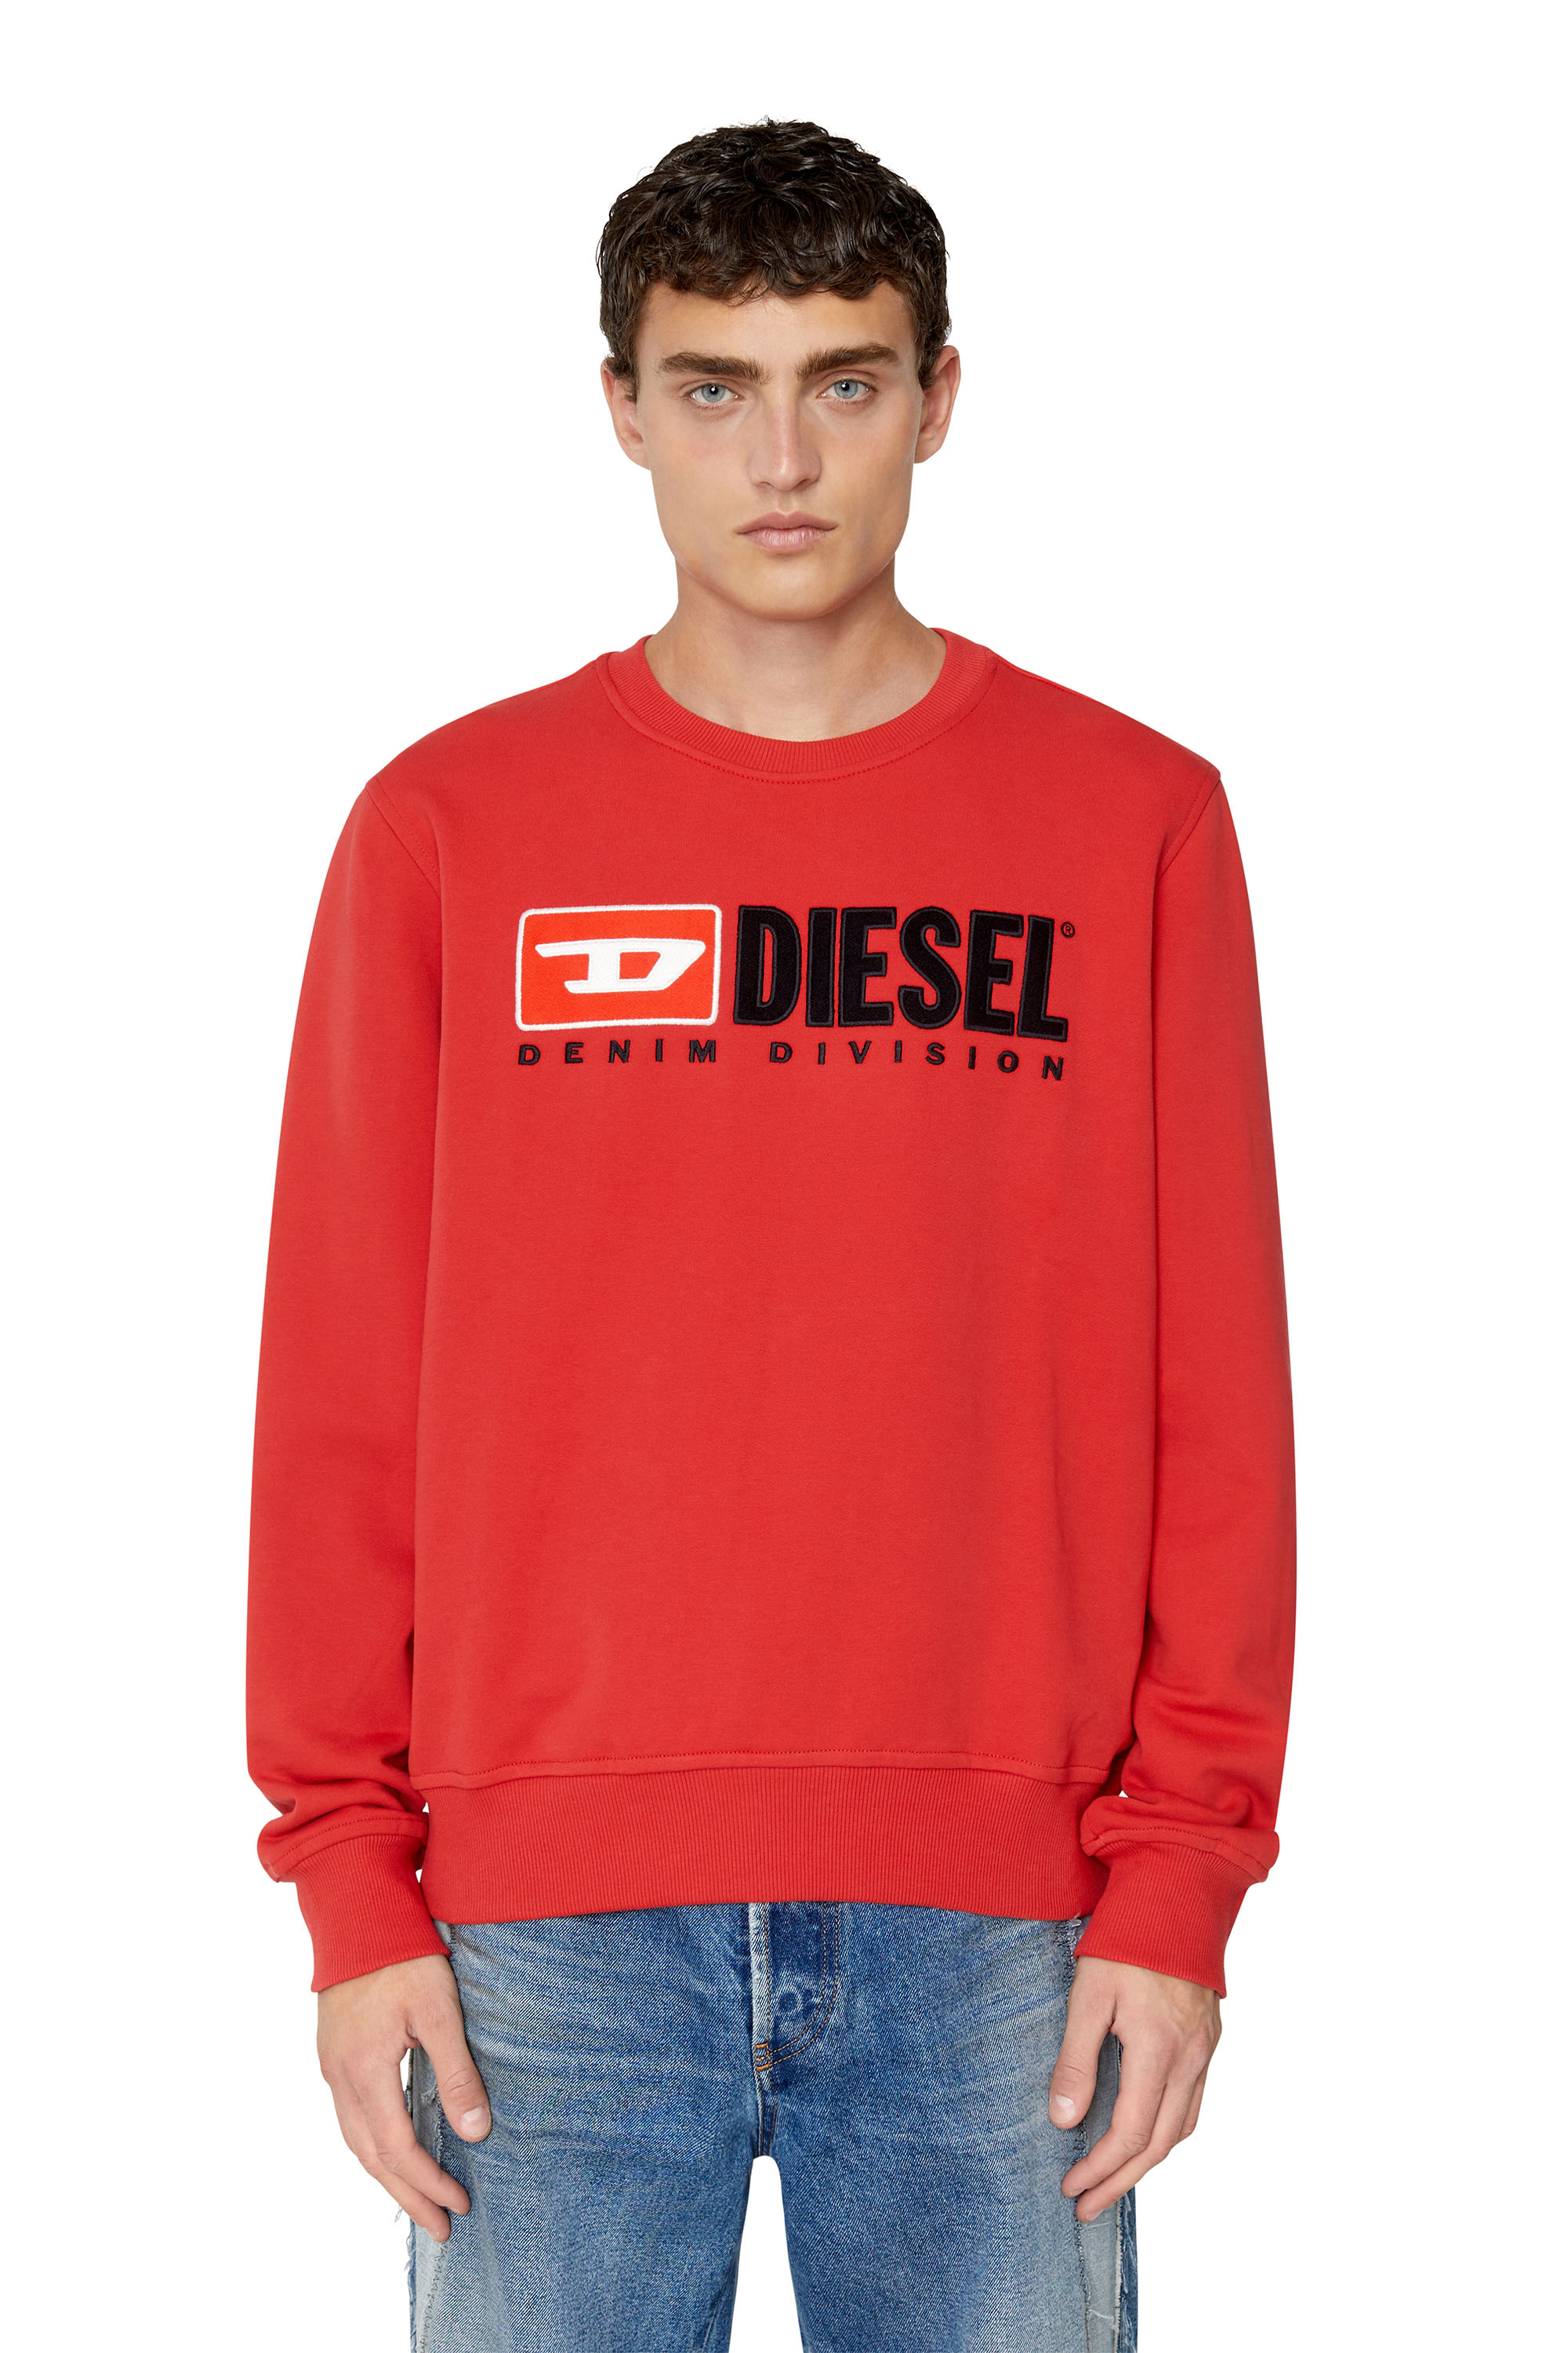 Diesel Denim Division Sweatshirt In Rosso